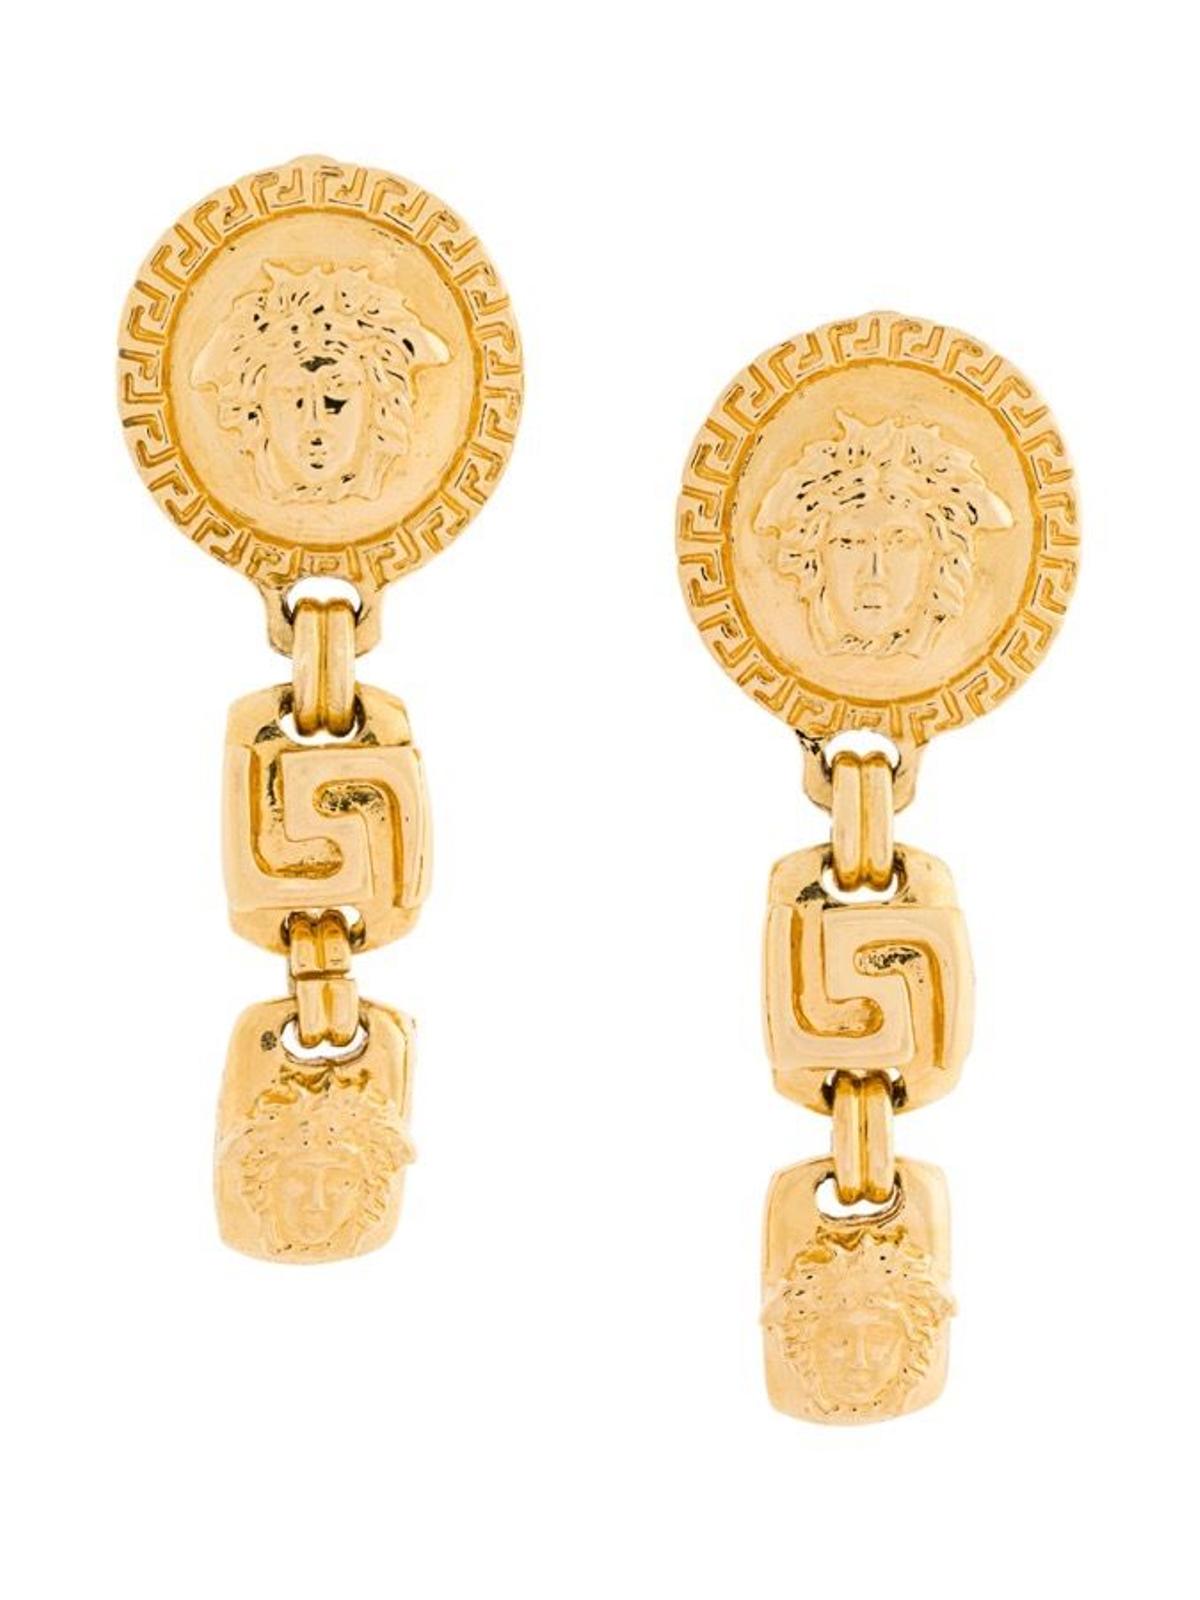 William Vintage Gianni Versace para Farfetch, pendientes dorados con logo